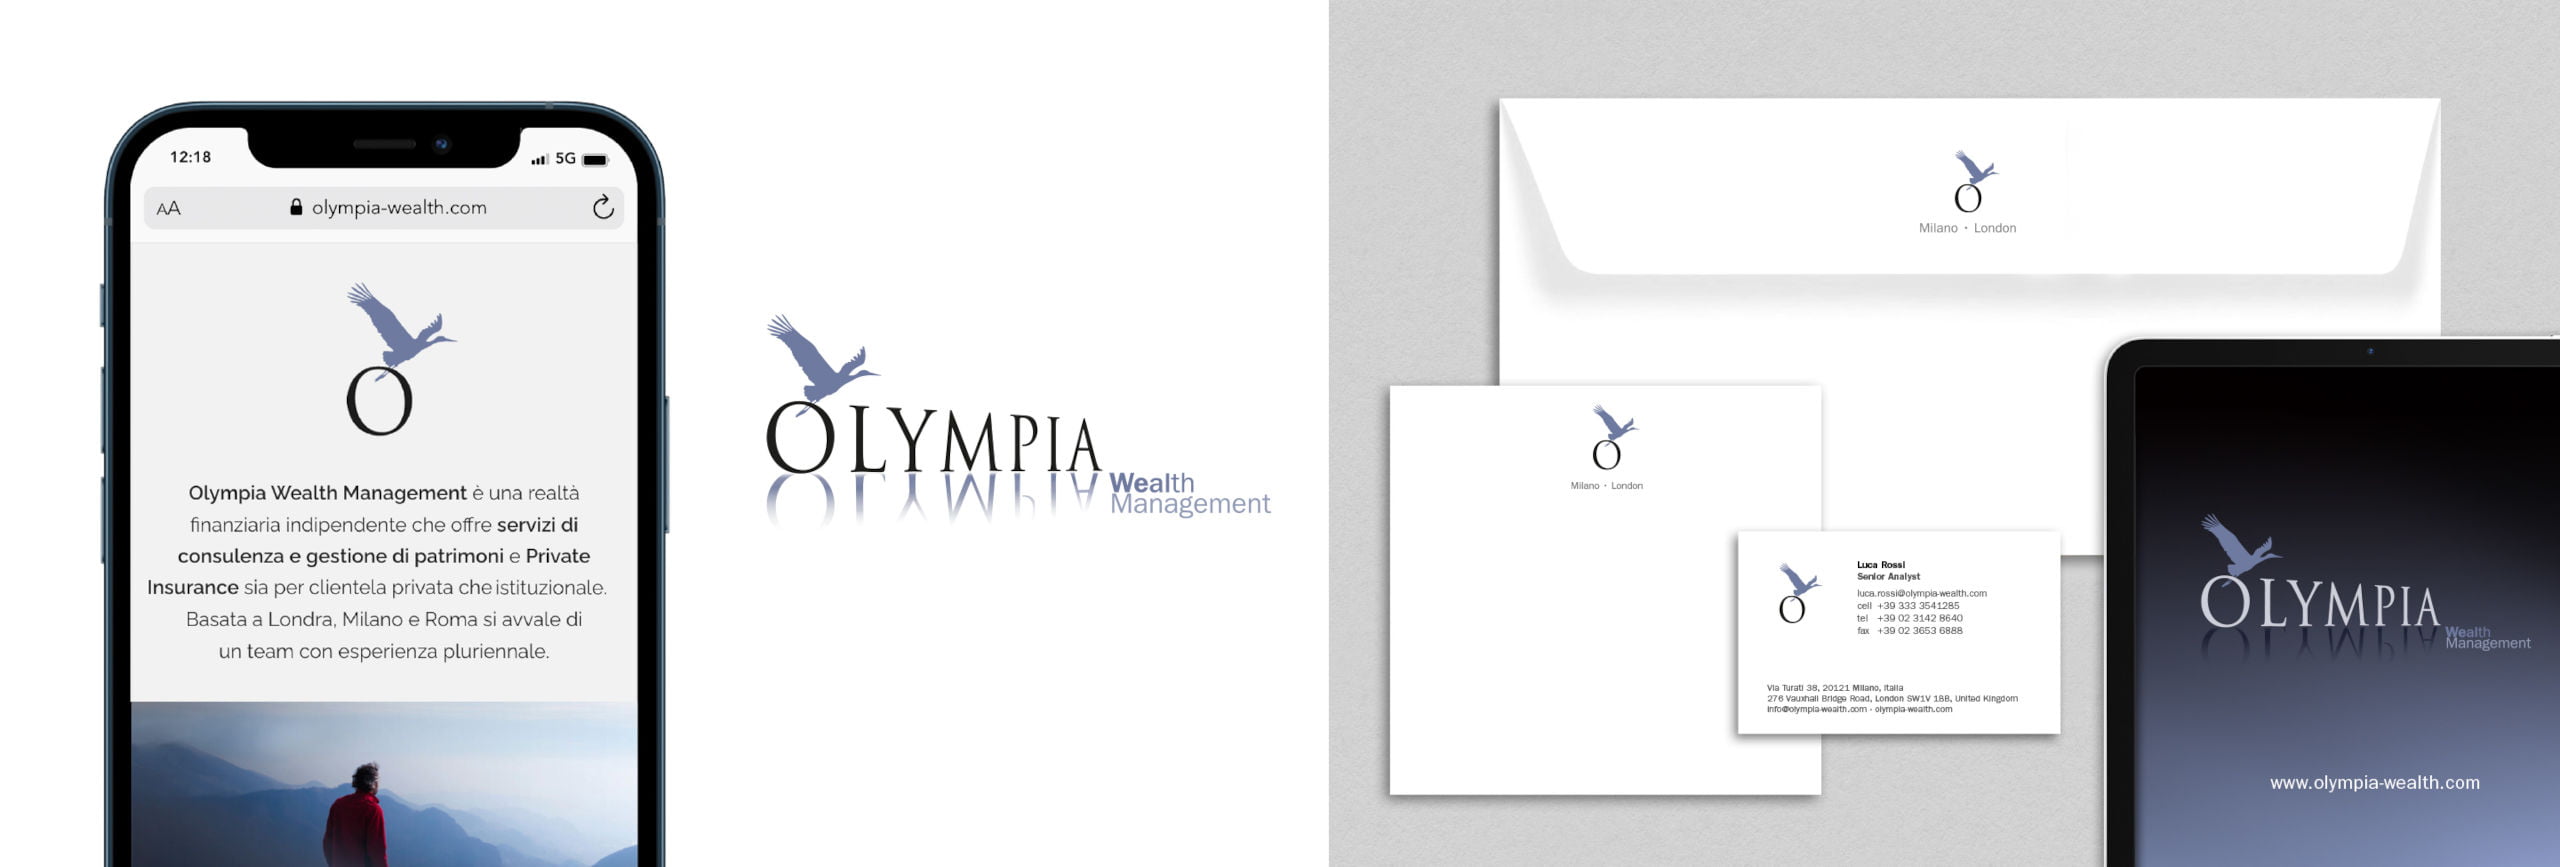 Olympia Wealth Management-Un progetto di comunicazione per una società di gestione del patrimonio